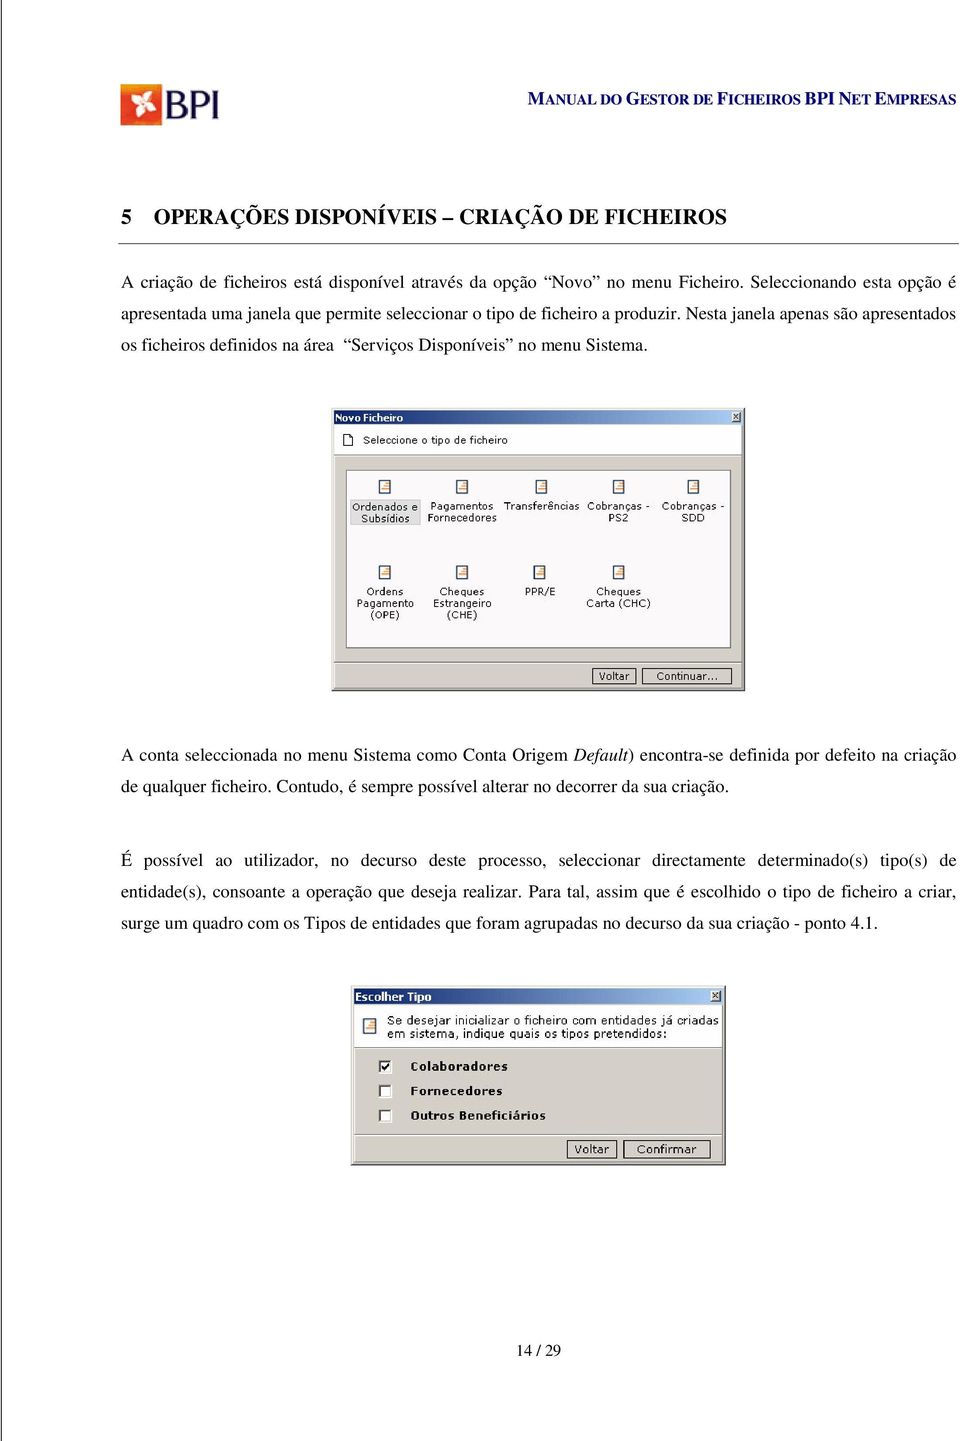 Nesta janela apenas são apresentados os ficheiros definidos na área Serviços Disponíveis no menu Sistema.